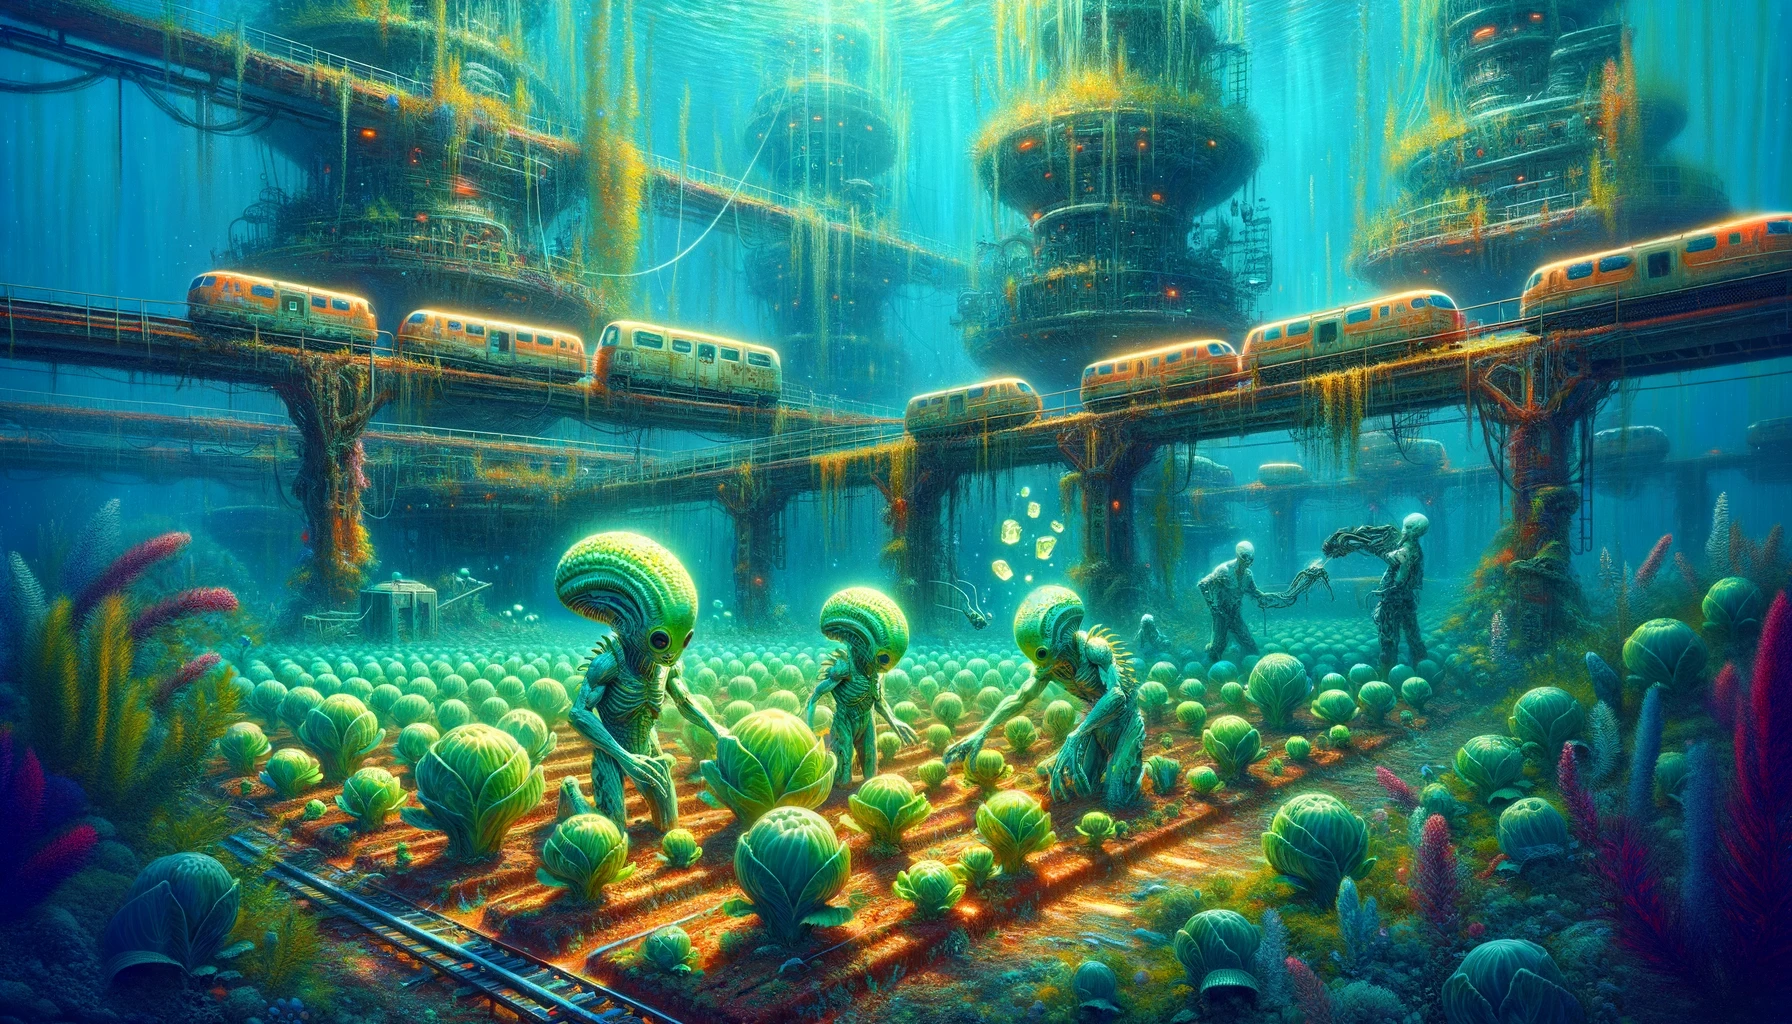 aliens underwater, gardening cabbage